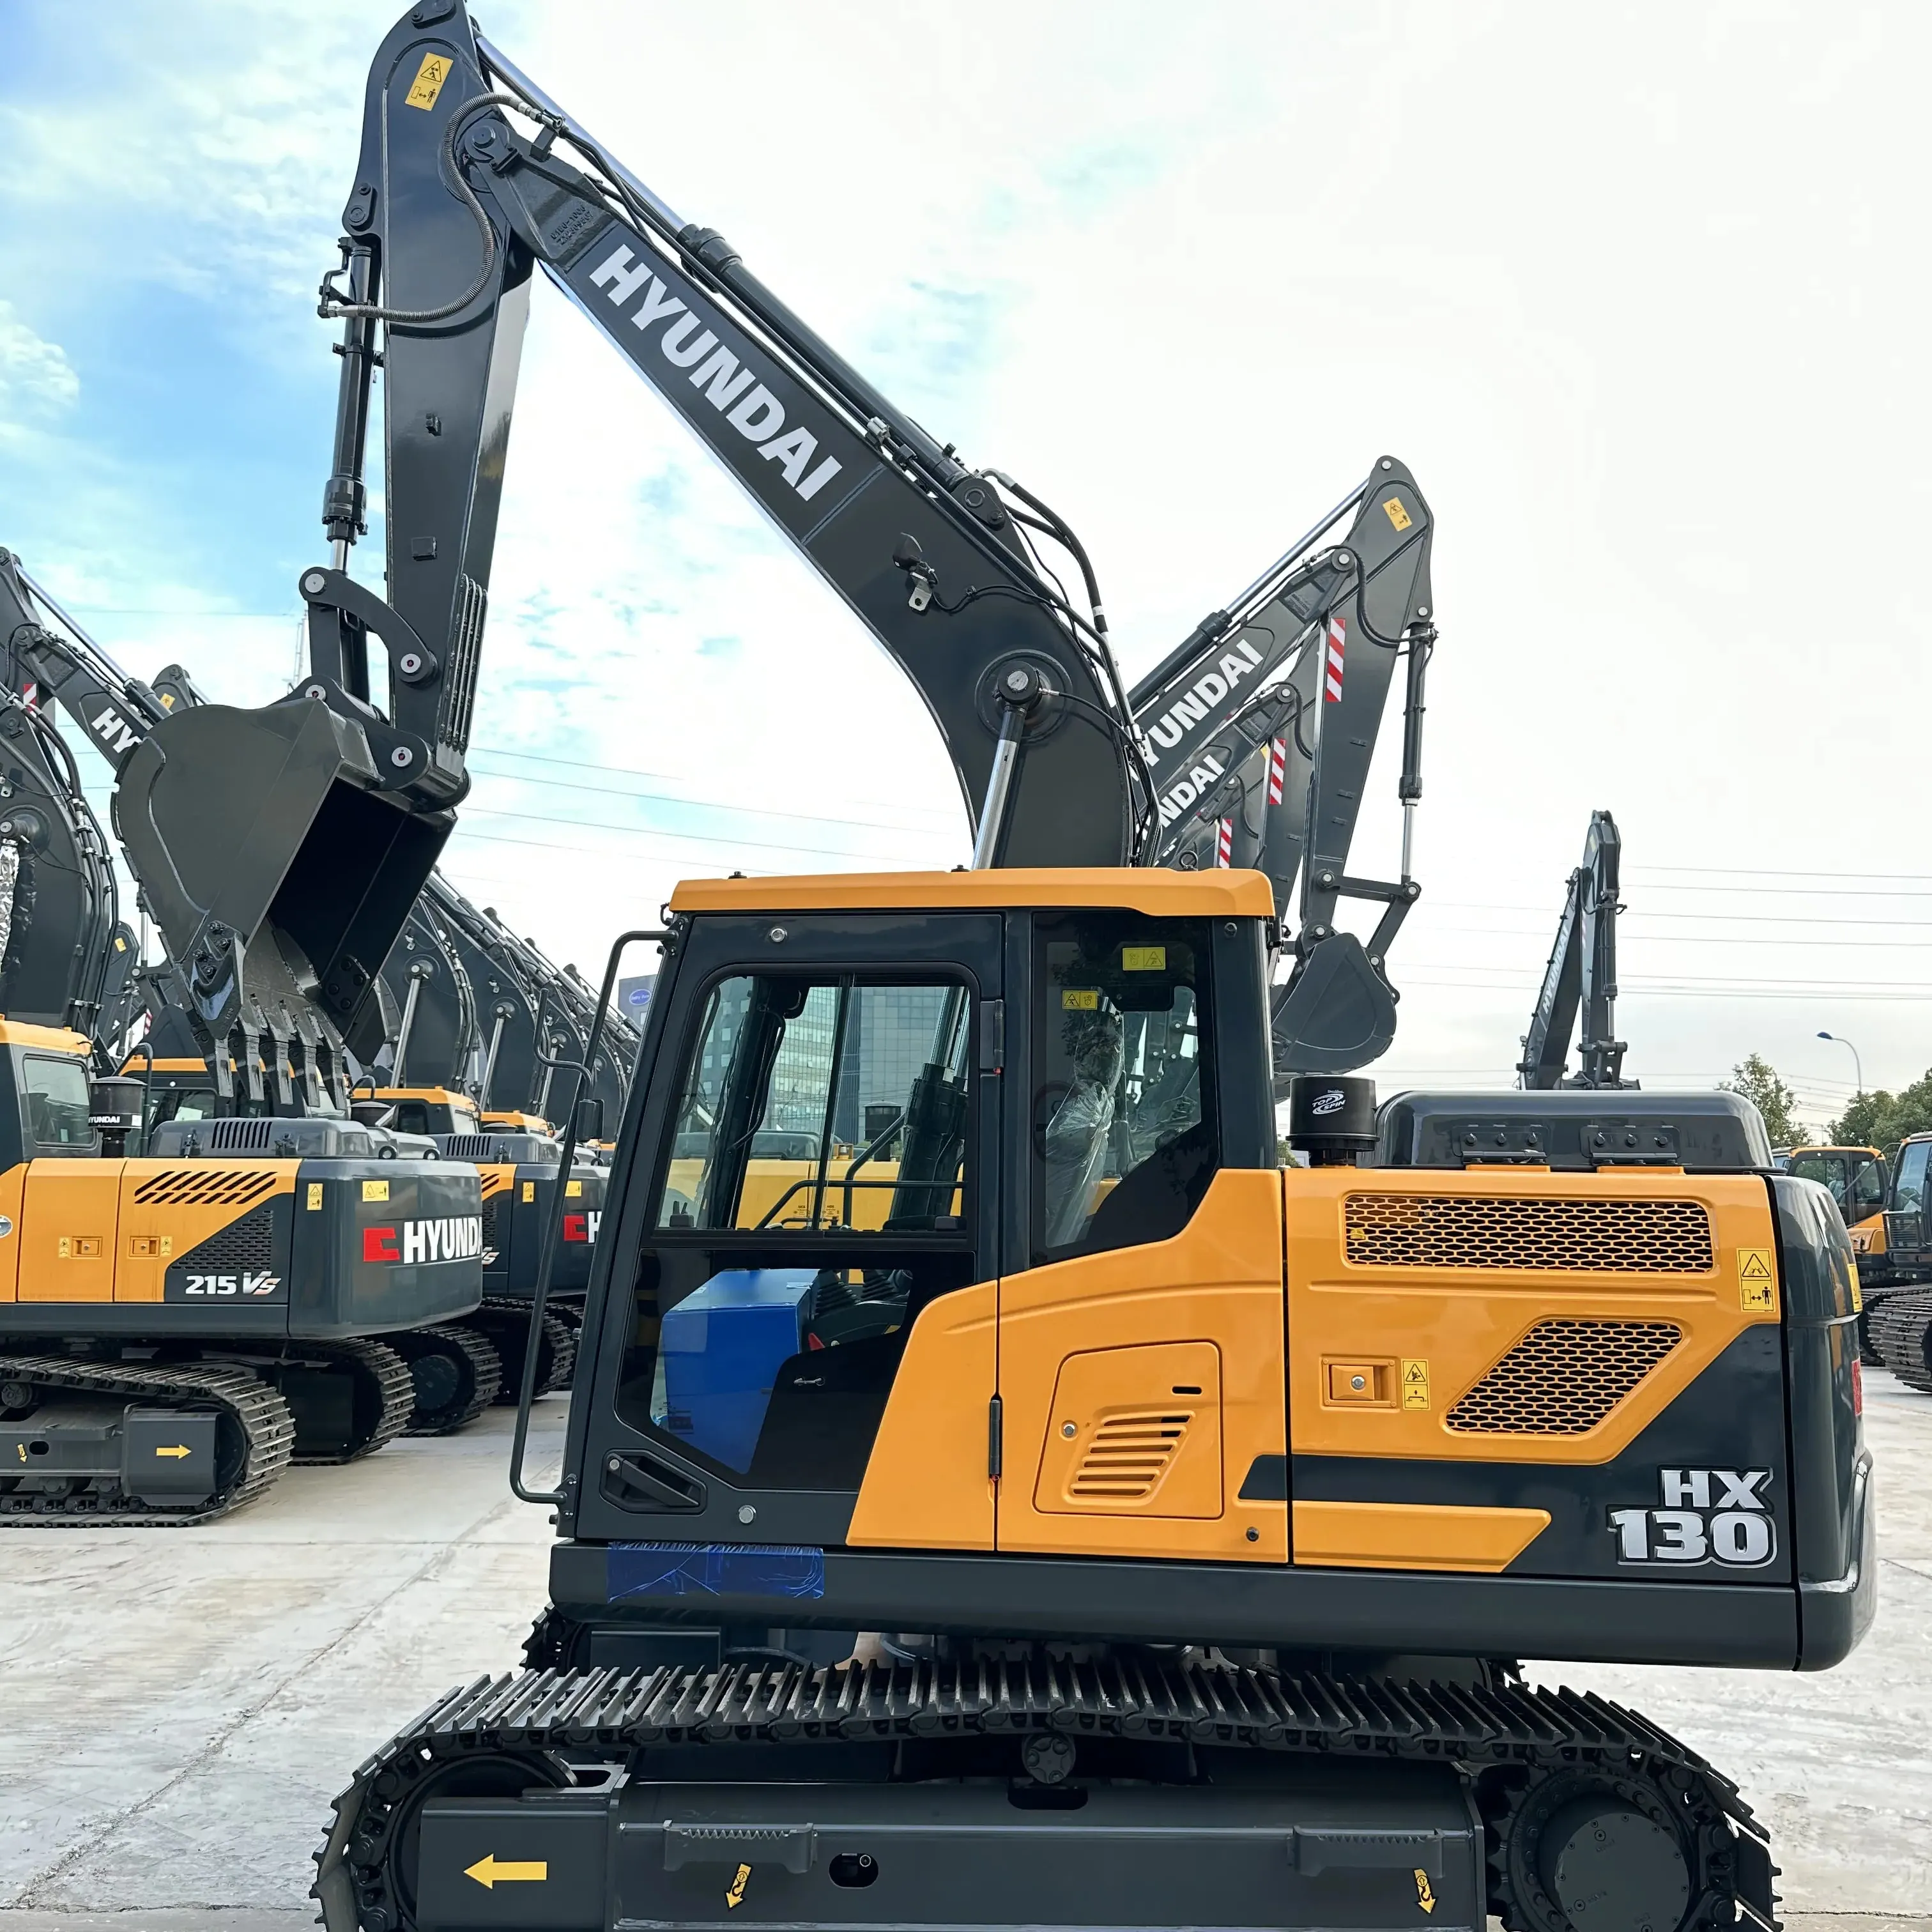 Nuovo spot Hyundai hx130 escavatore per la vendita, 13 tonnellate cingolato escavatore, ottimo prezzo prestazioni Multi funzione